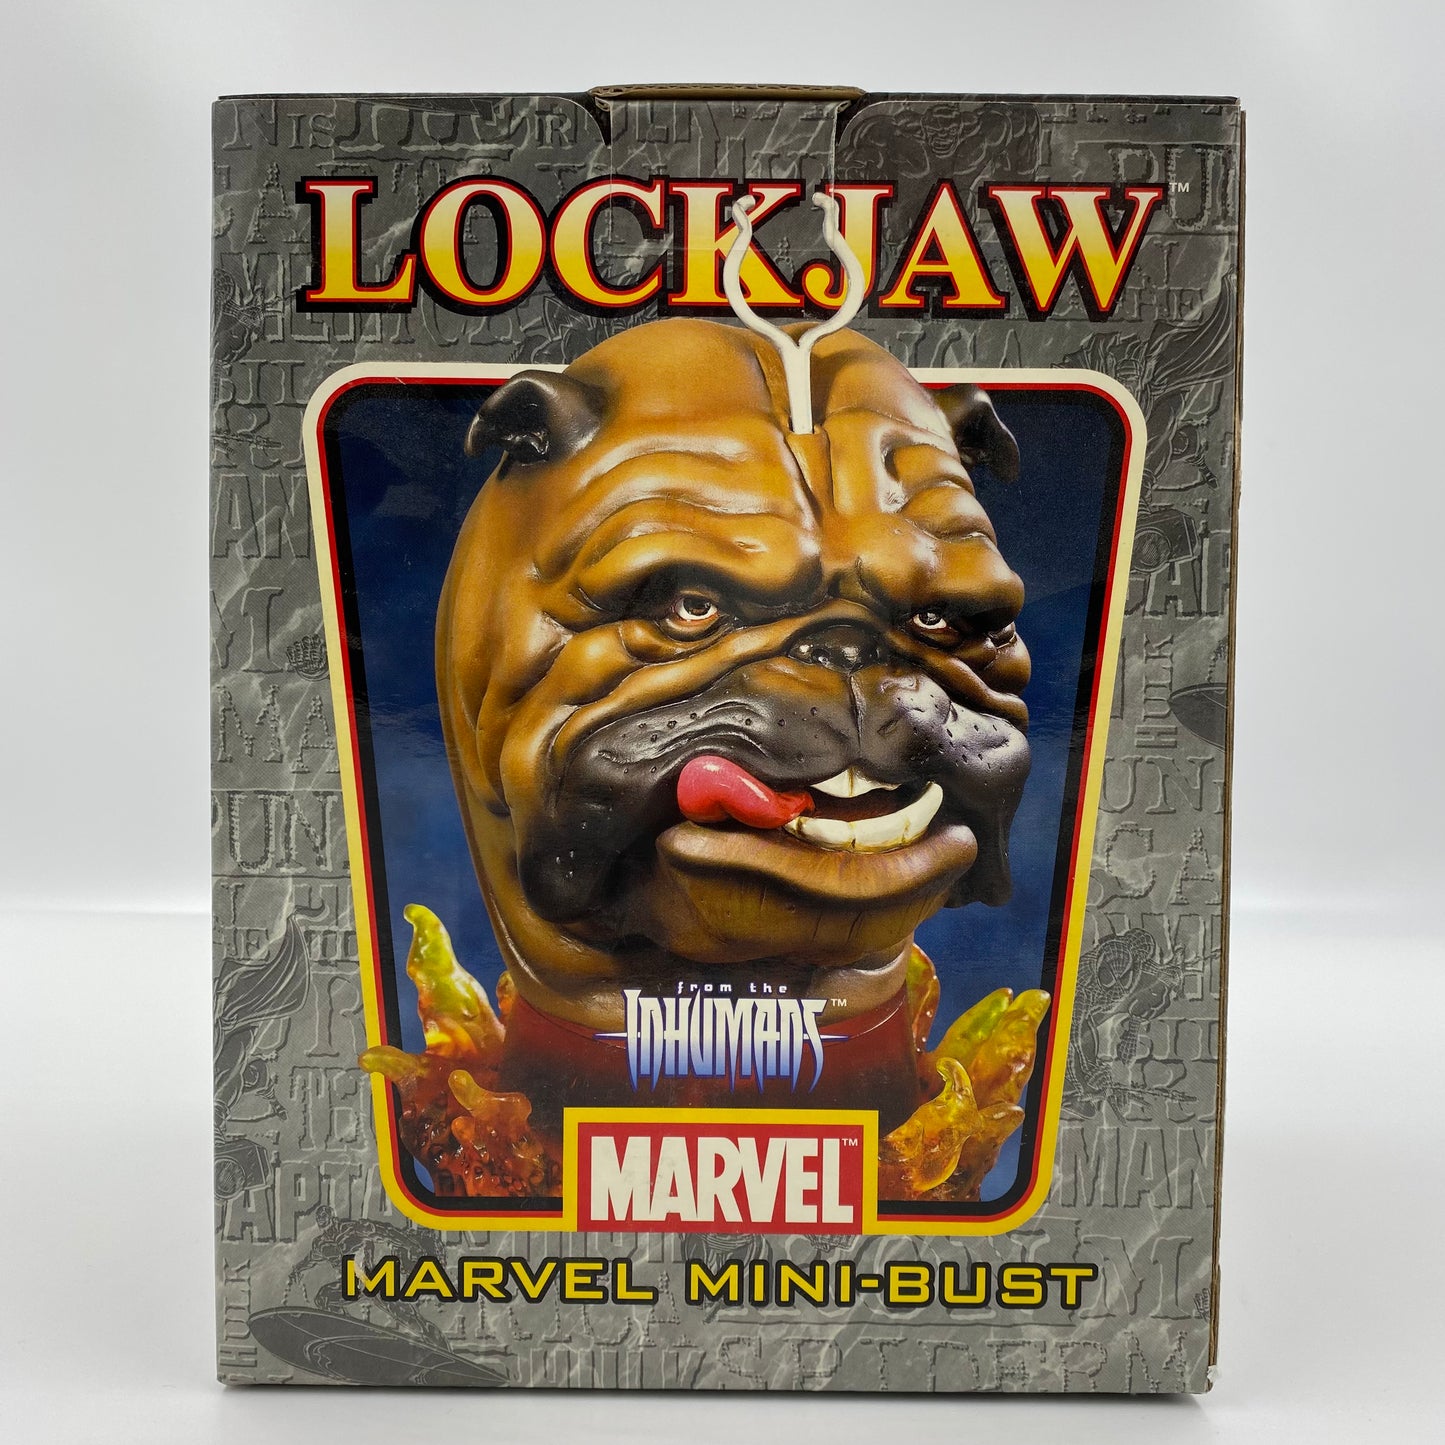 Lockjaw Marvel mini-bust (2005) Bowen Designs